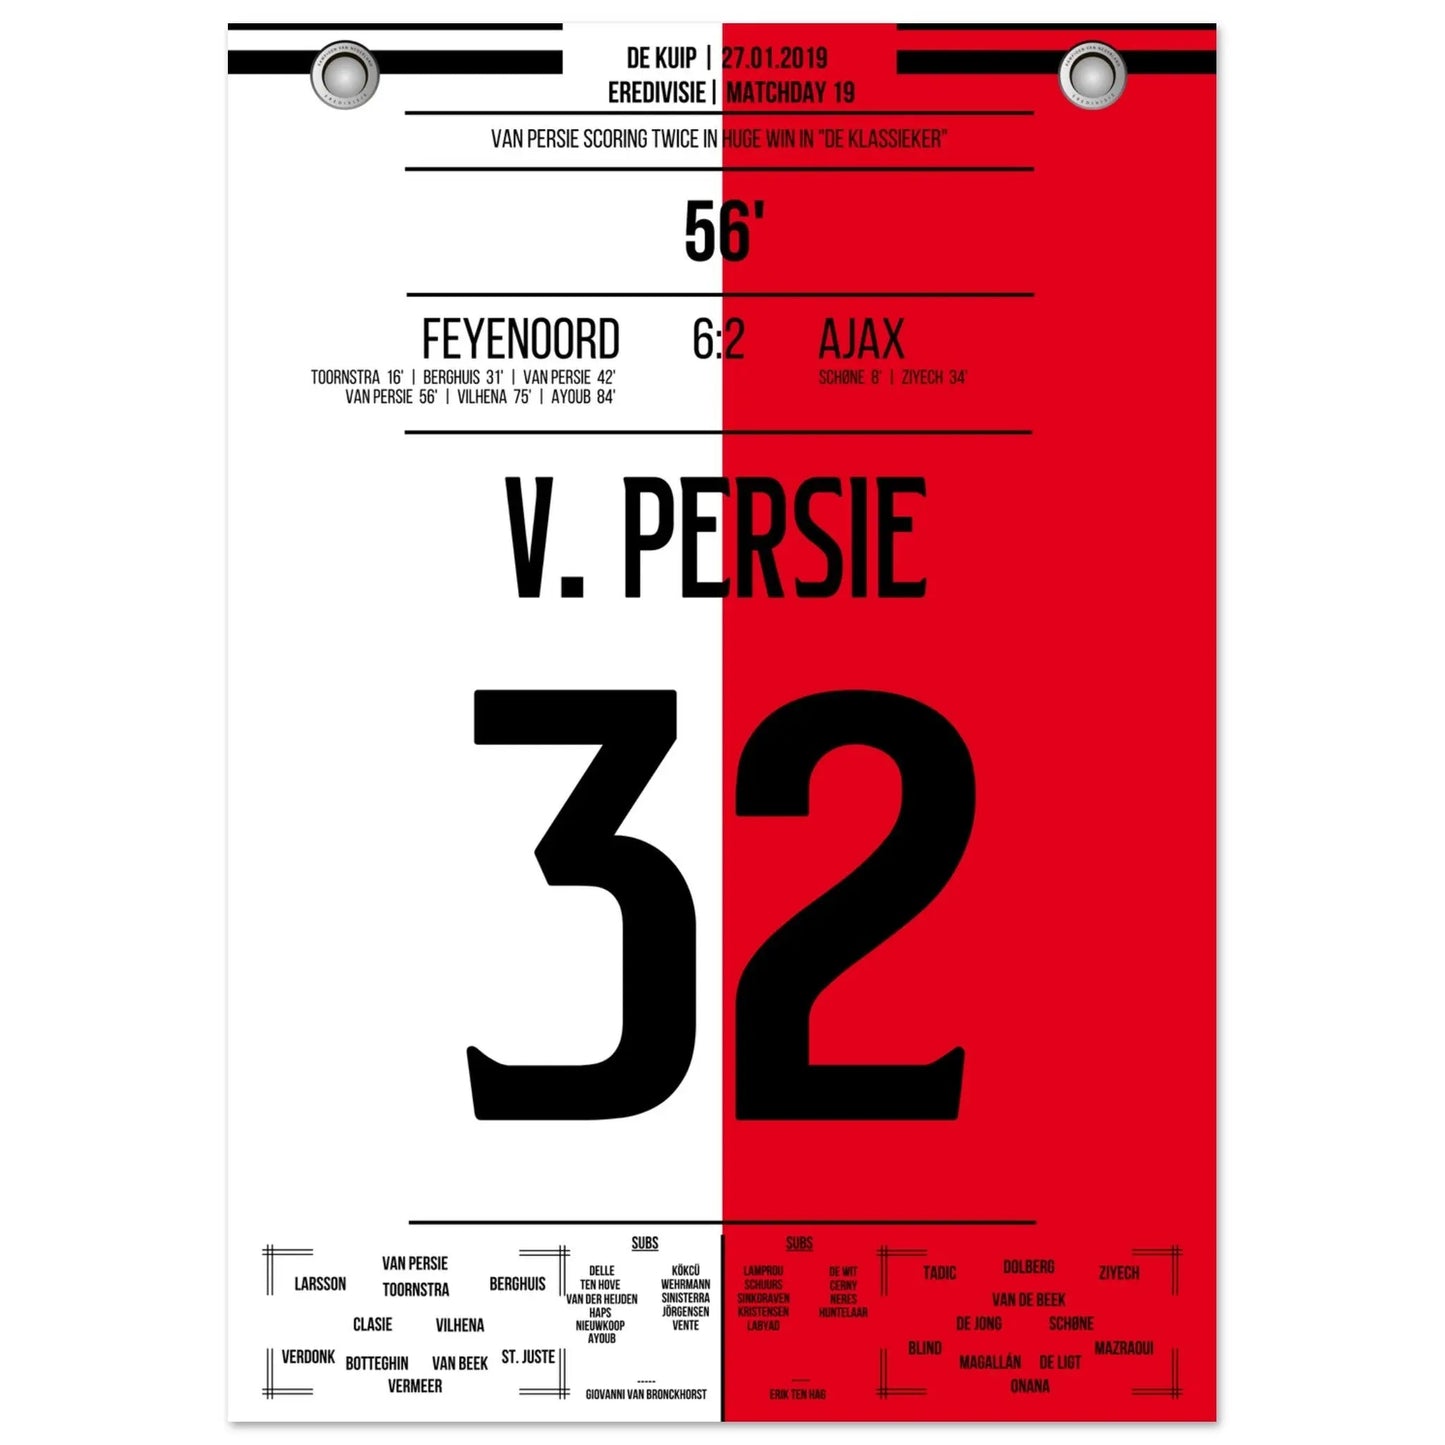 Van Persie mit Doppelpack im "De Klassieker" 2019